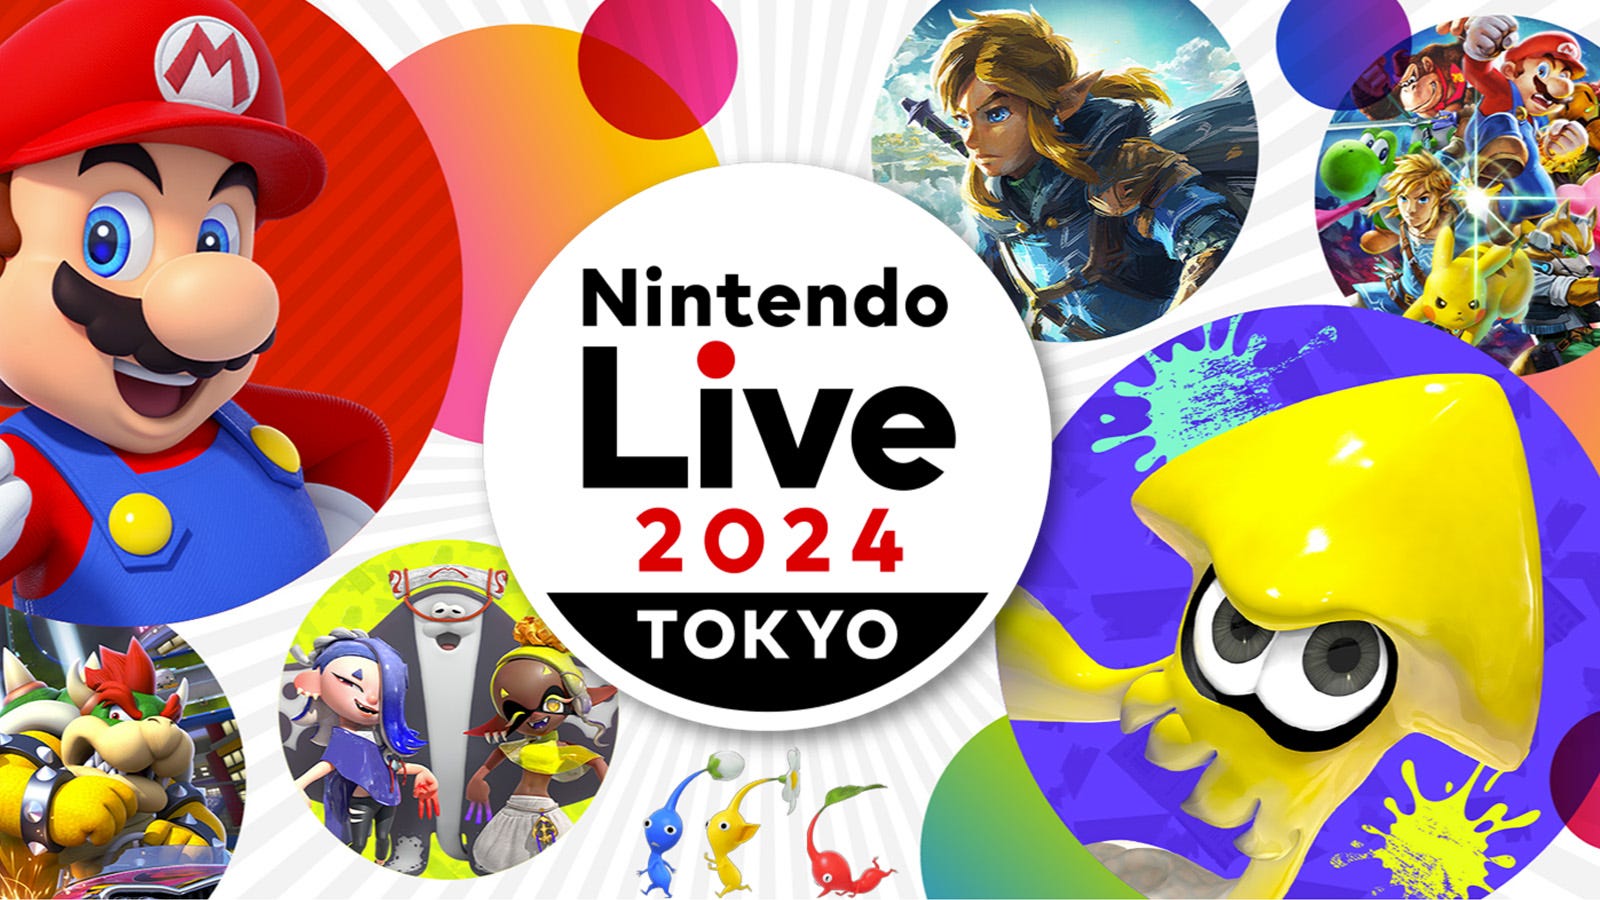 Ko te huihuinga Nintendo Live 2024 Tokyo i whakakorehia i muri i te whakatumatuma ki nga kaimahi